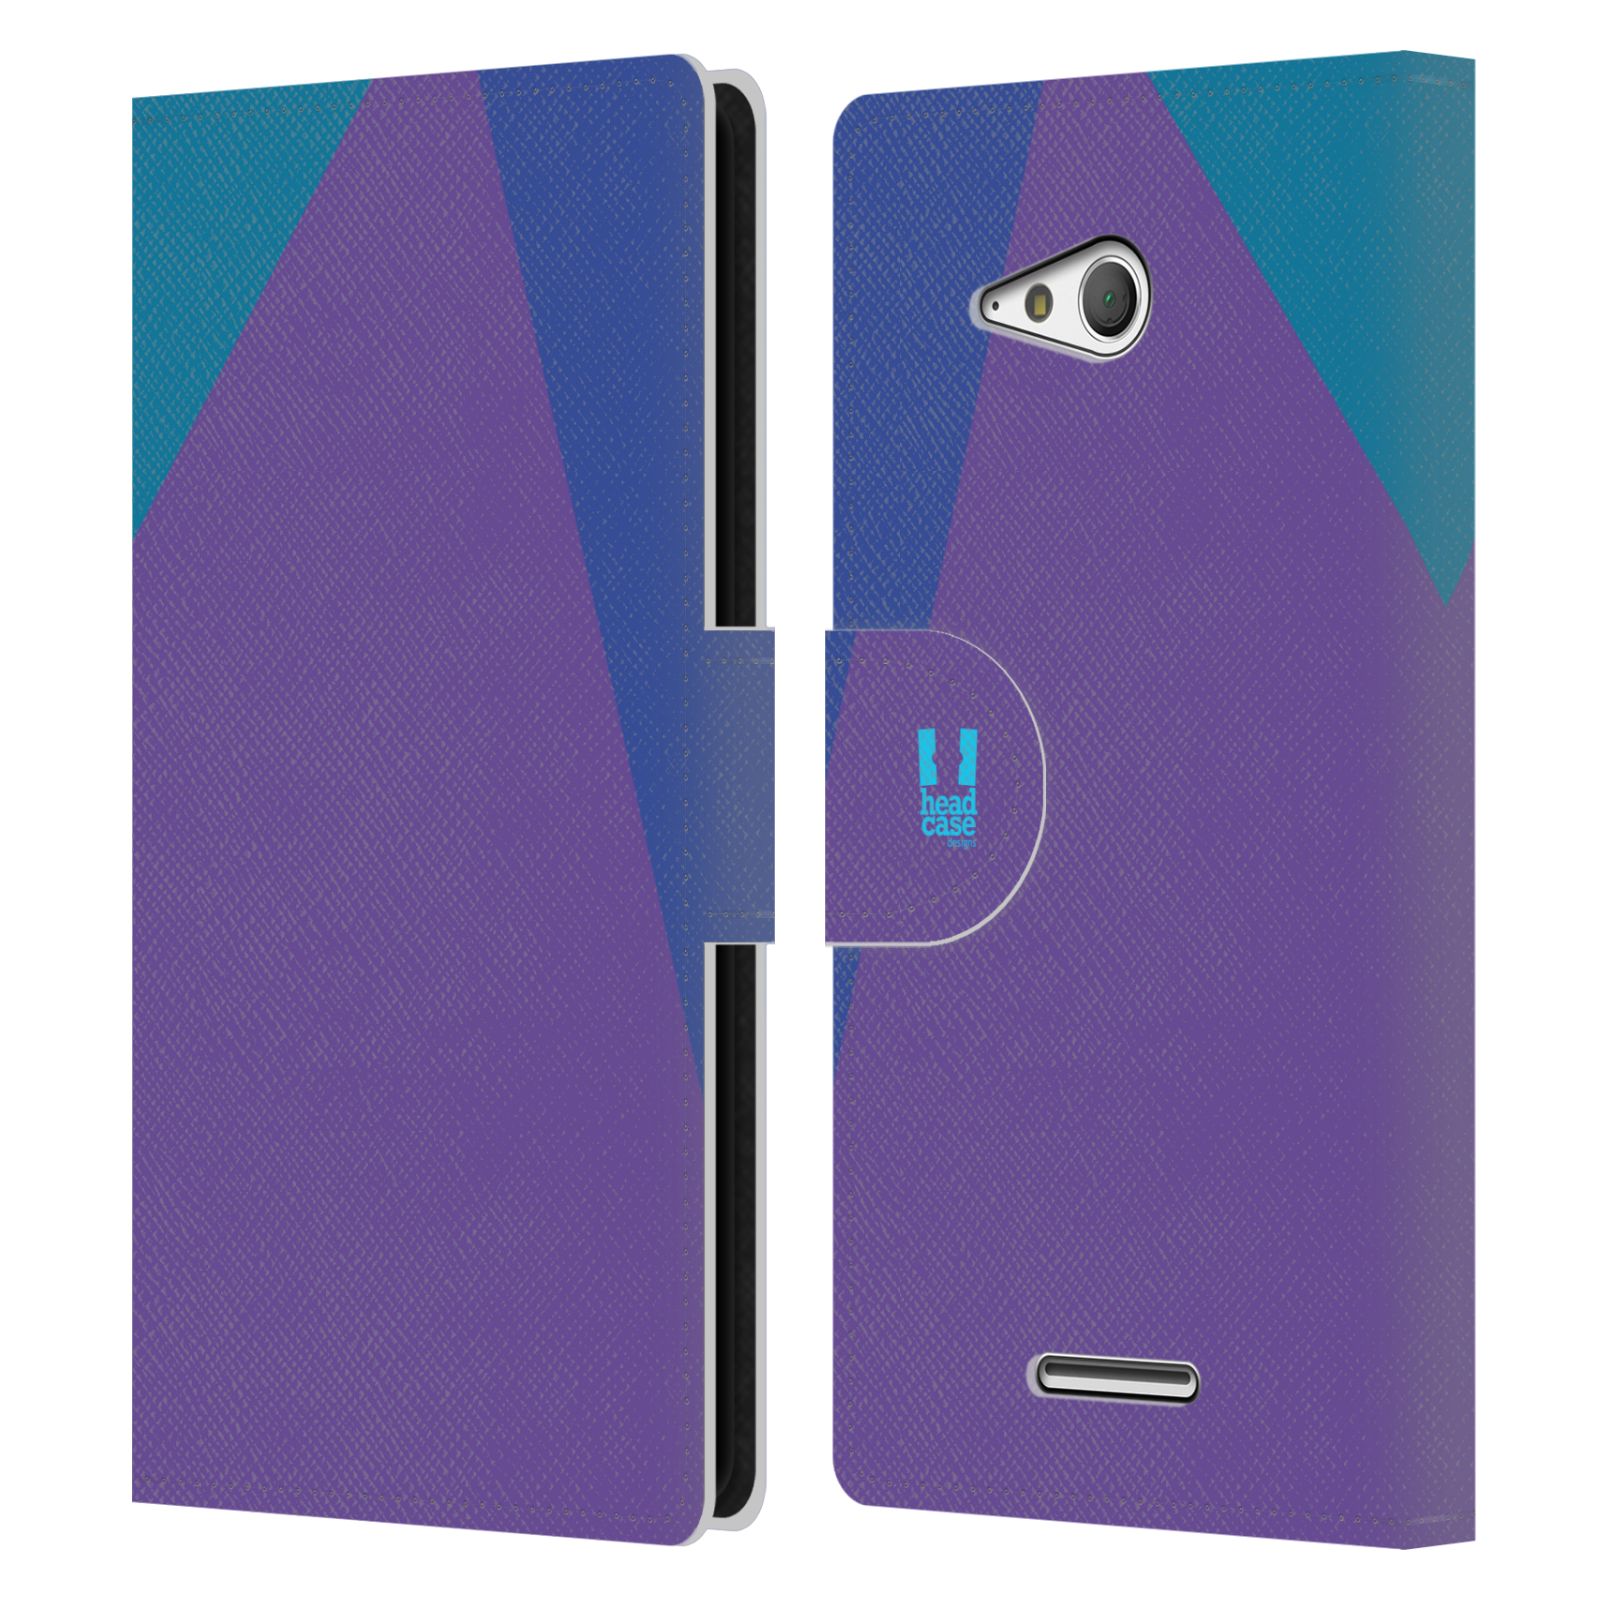 HEAD CASE Flipové pouzdro pro mobil SONY Xperia E4g barevné tvary fialová feminine